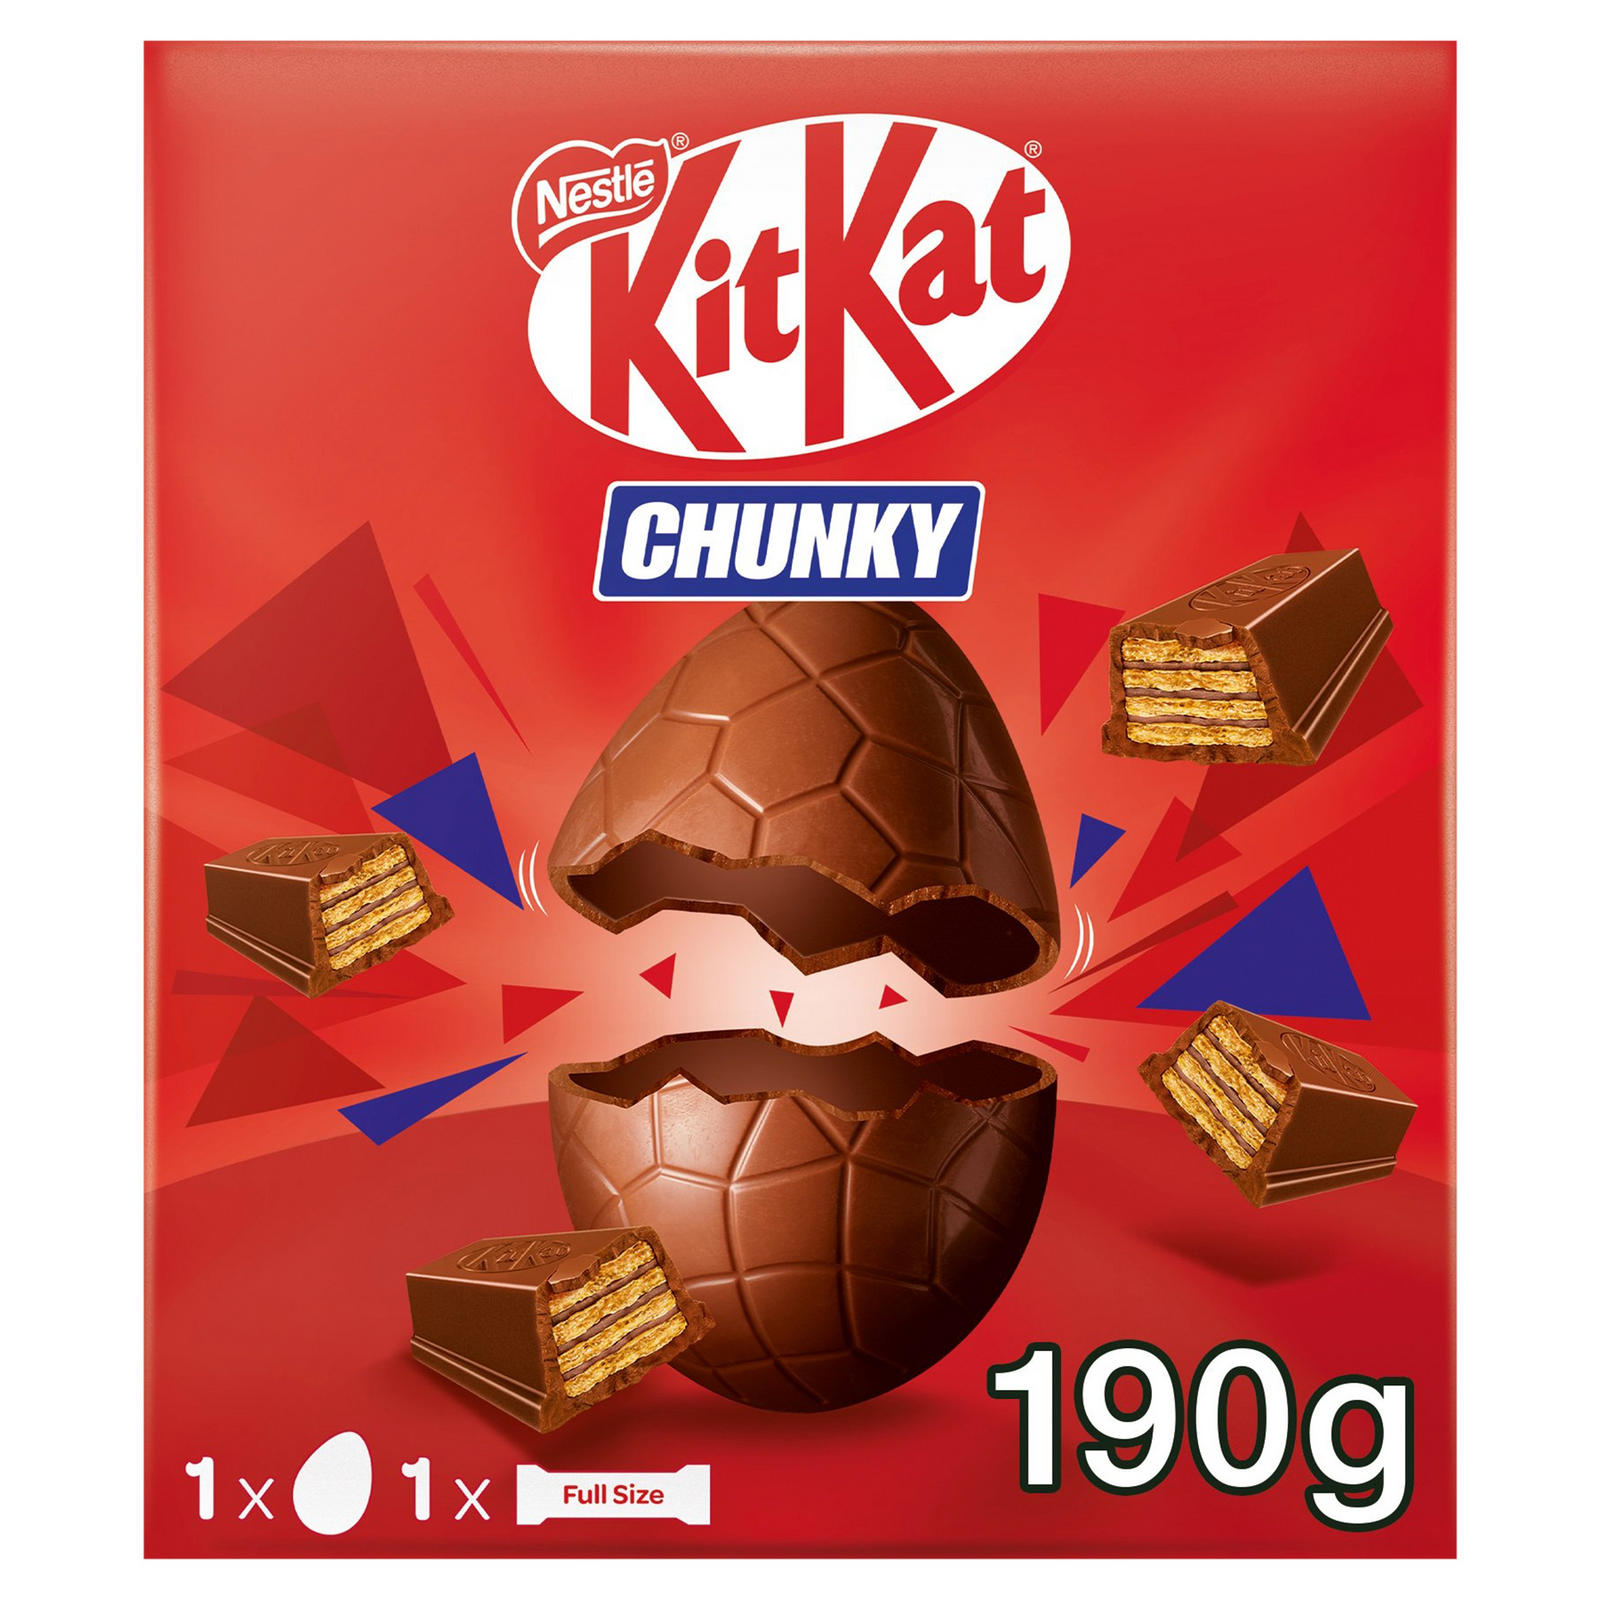 KitKat-Chunky-Eier sind dieses Jahr etwas weniger stückig